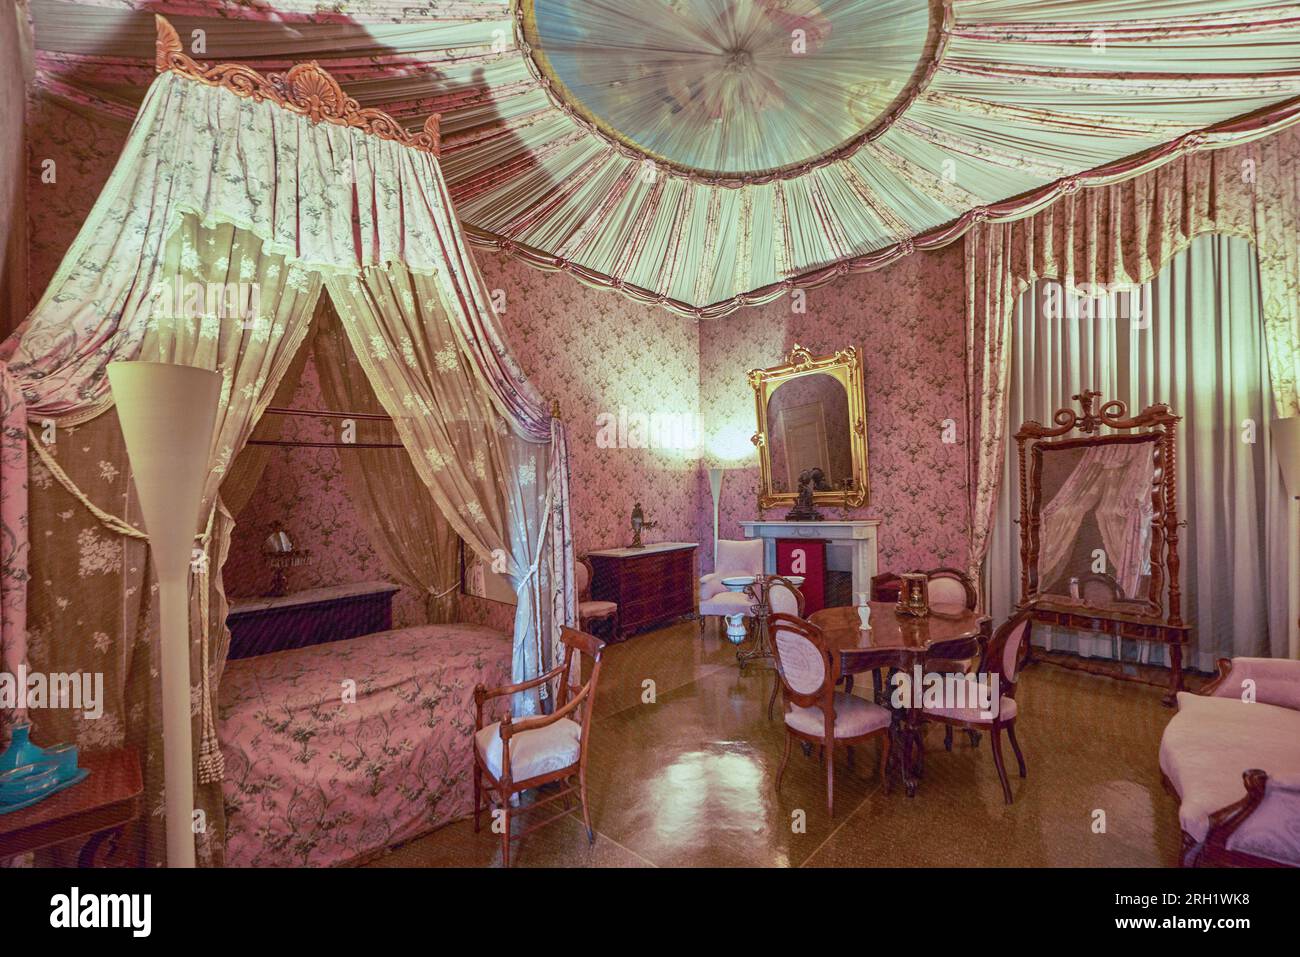 Impressive interior of Medici villa in Poggio a Caiano, Italy Stock Photo